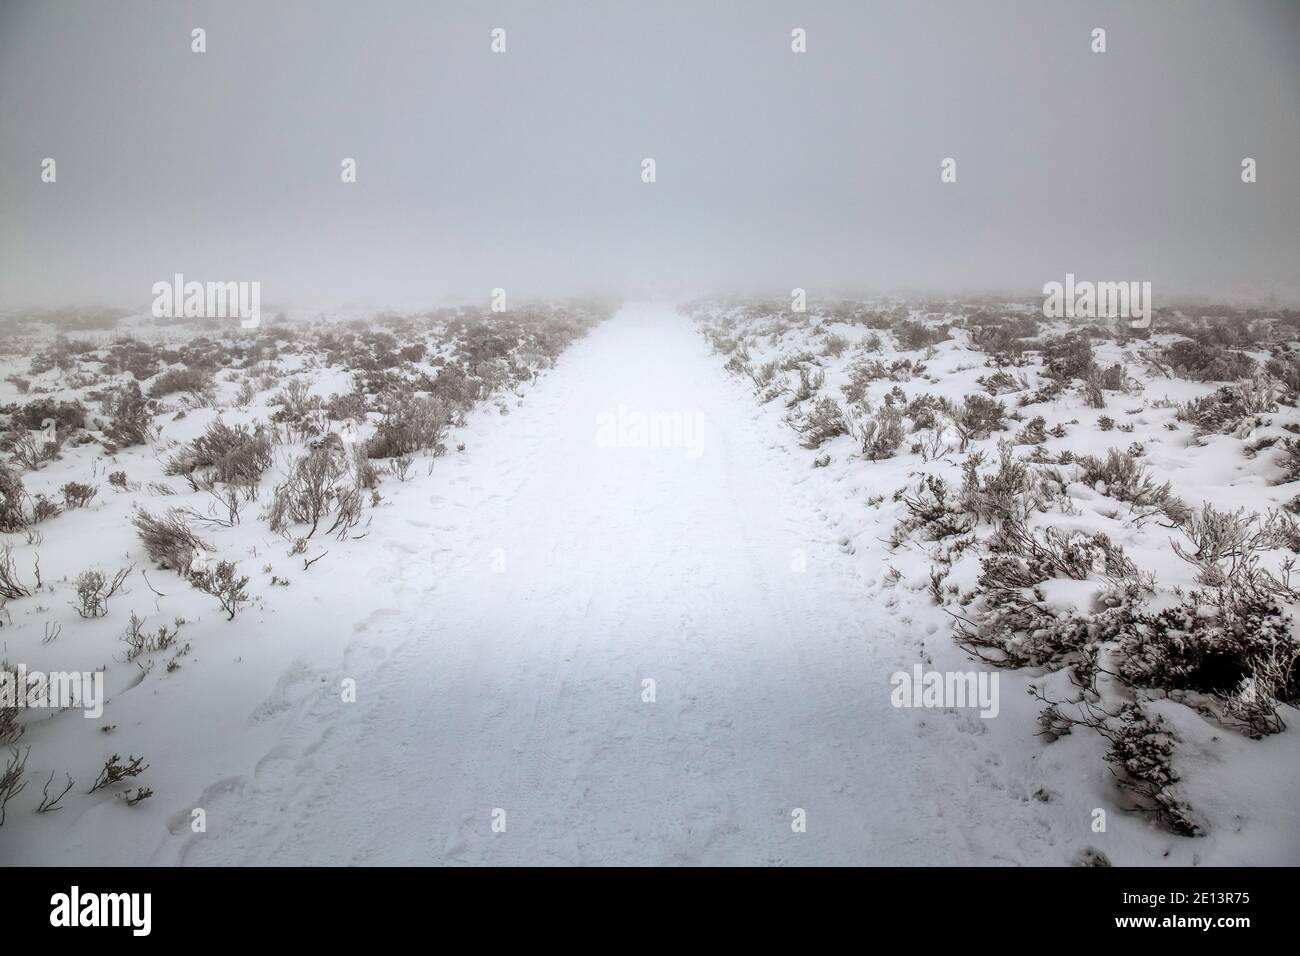 Fotografia che mostra un percorso coperto di neve e ghiaccio che si allontana dalla fotocamera con vegetazione scarsa su entrambi i lati. Foto Stock